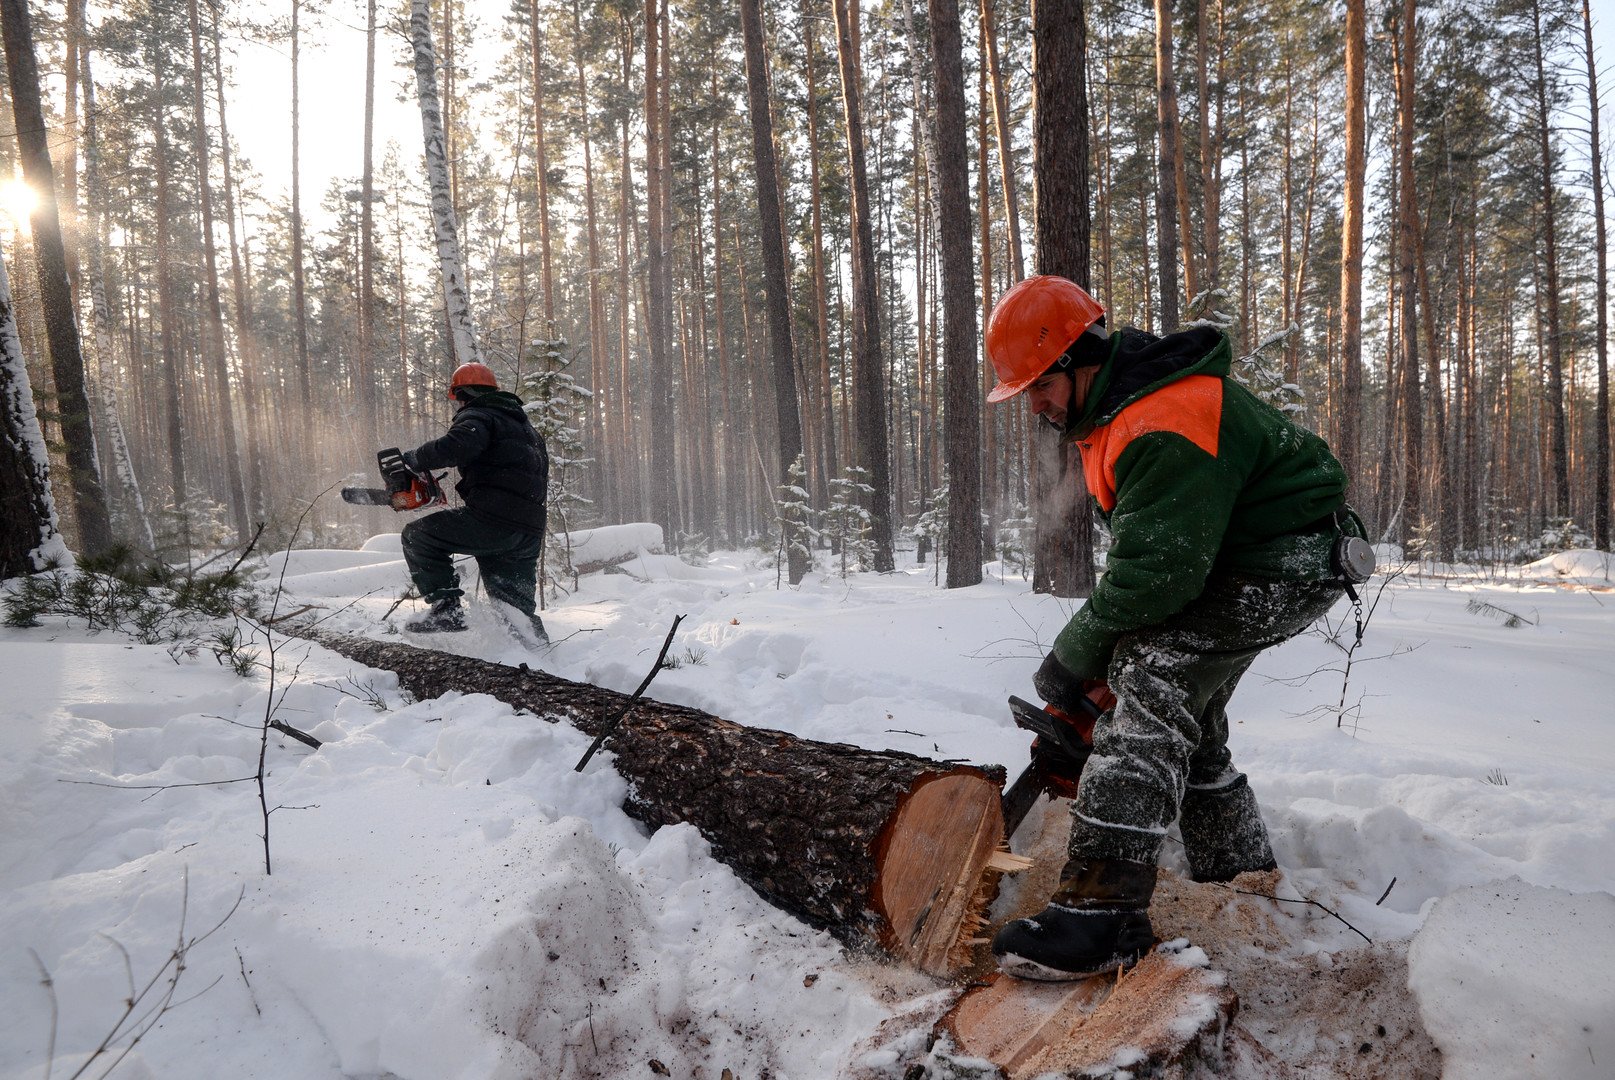 بلغت صادرات روسيا من الأخشاب إلى الصين نحو 2.2 مليار دولار في عام 2013